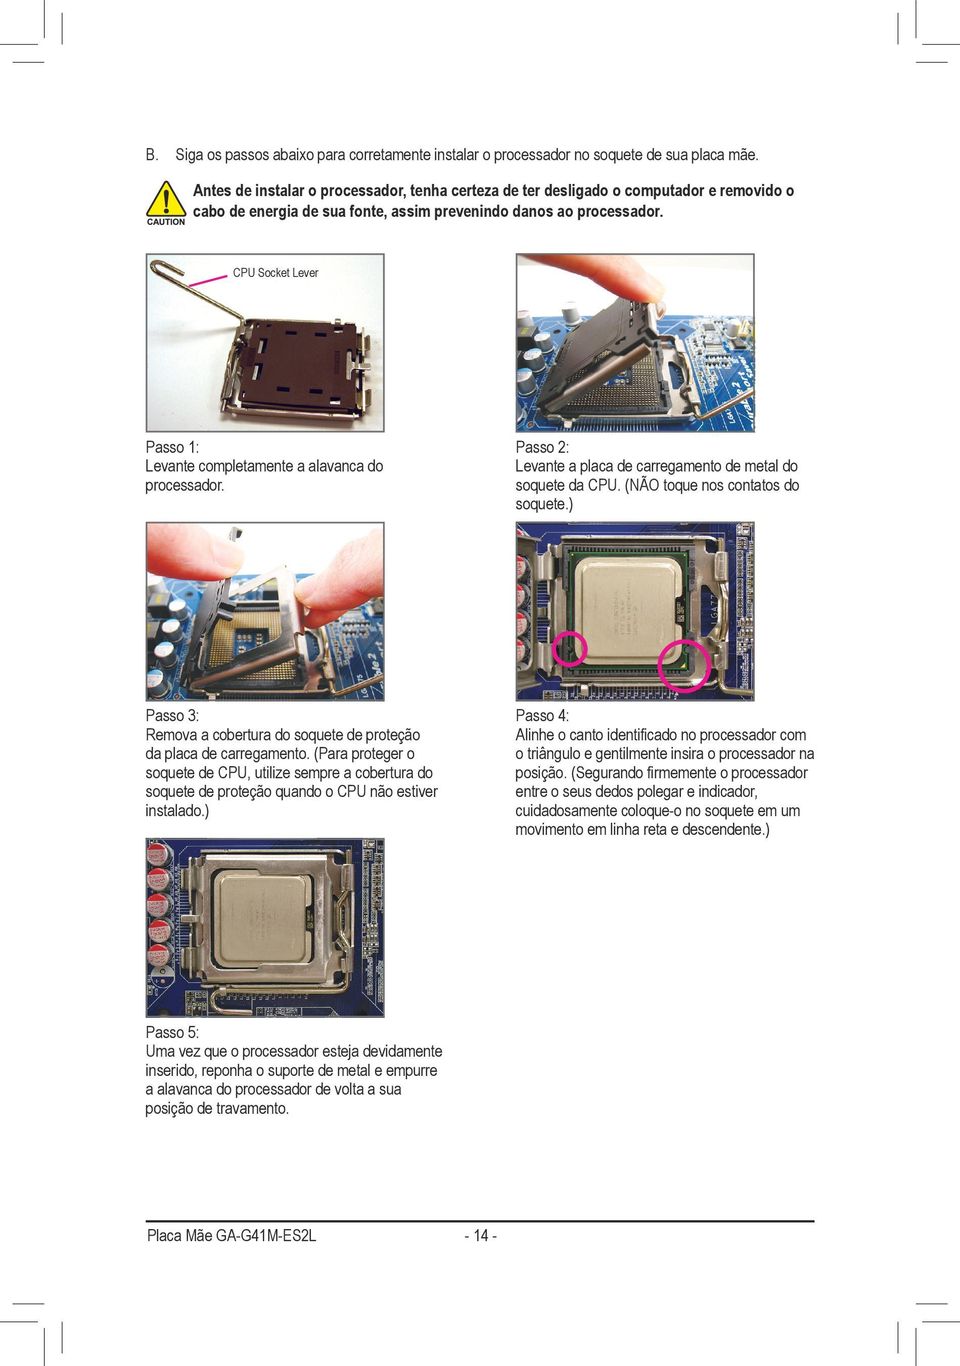 CPU Socket Lever Passo 1: Levante completamente a alavanca do processador. Passo 2: Levante a placa de carregamento de metal do soquete da CPU. (NÃO toque nos contatos do soquete.